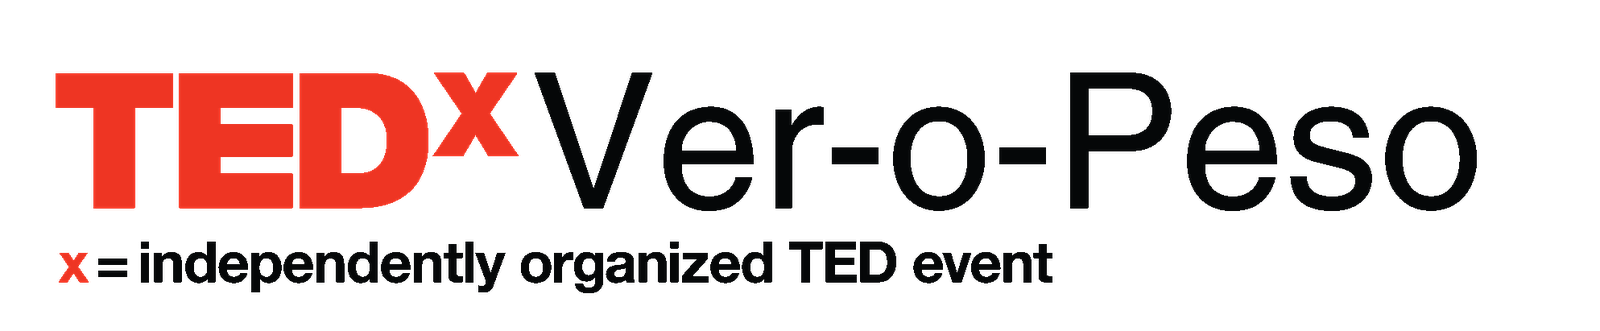 TEDxVer-o-Peso